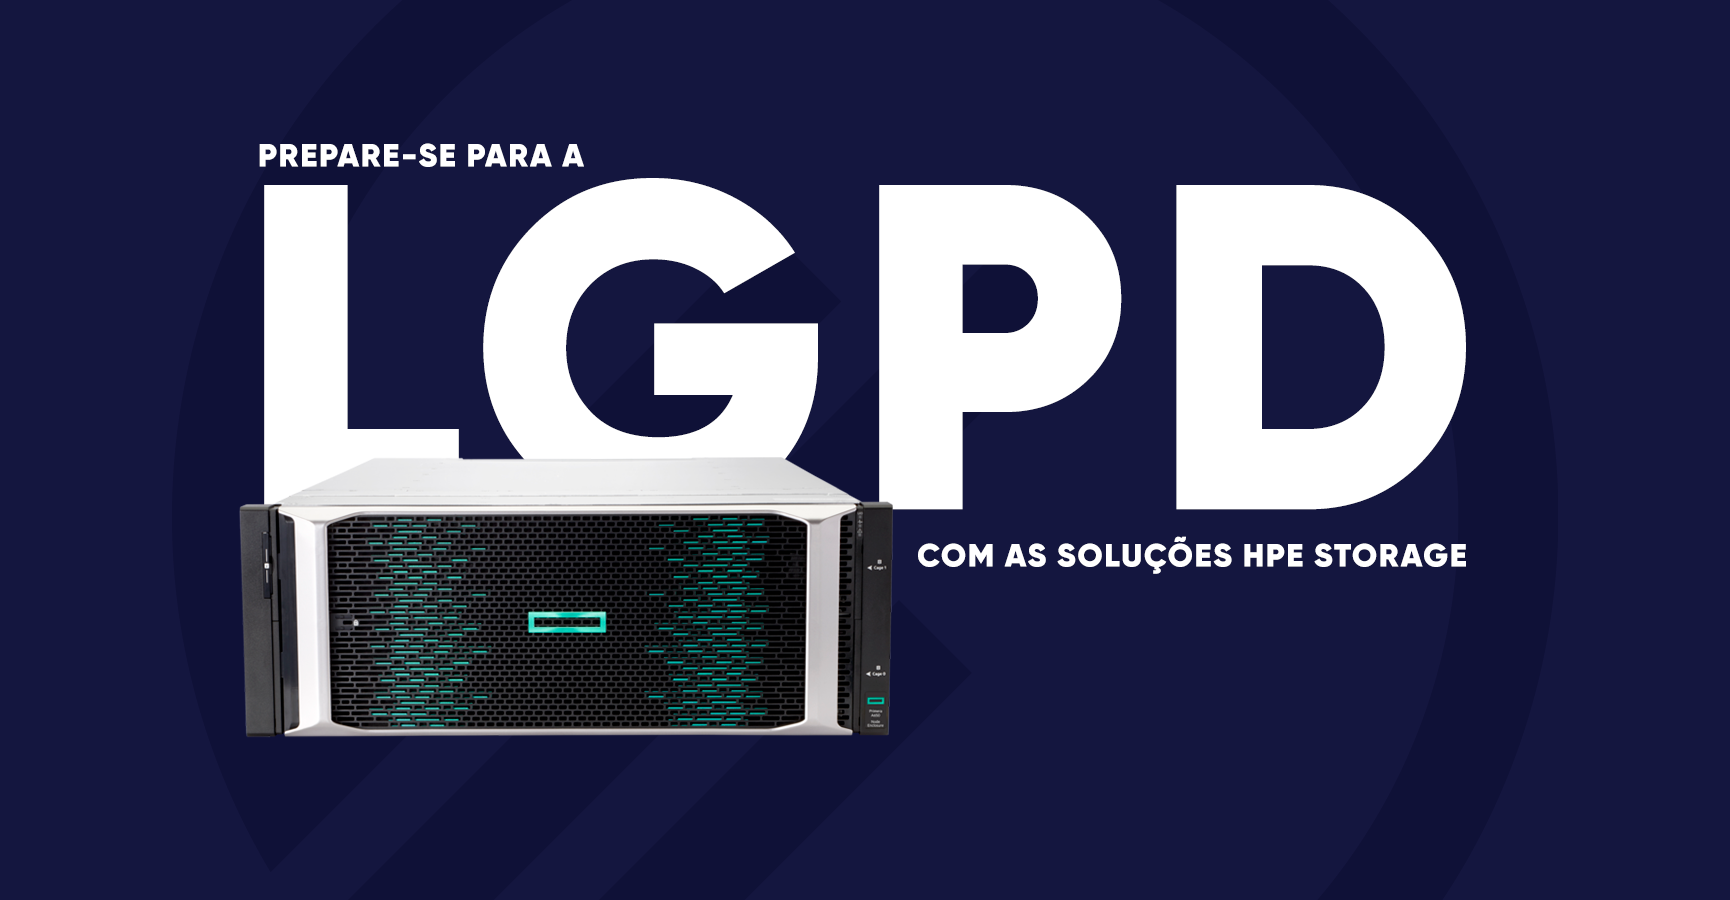 Prepare-se para a LGPD com as soluções HPE Storage